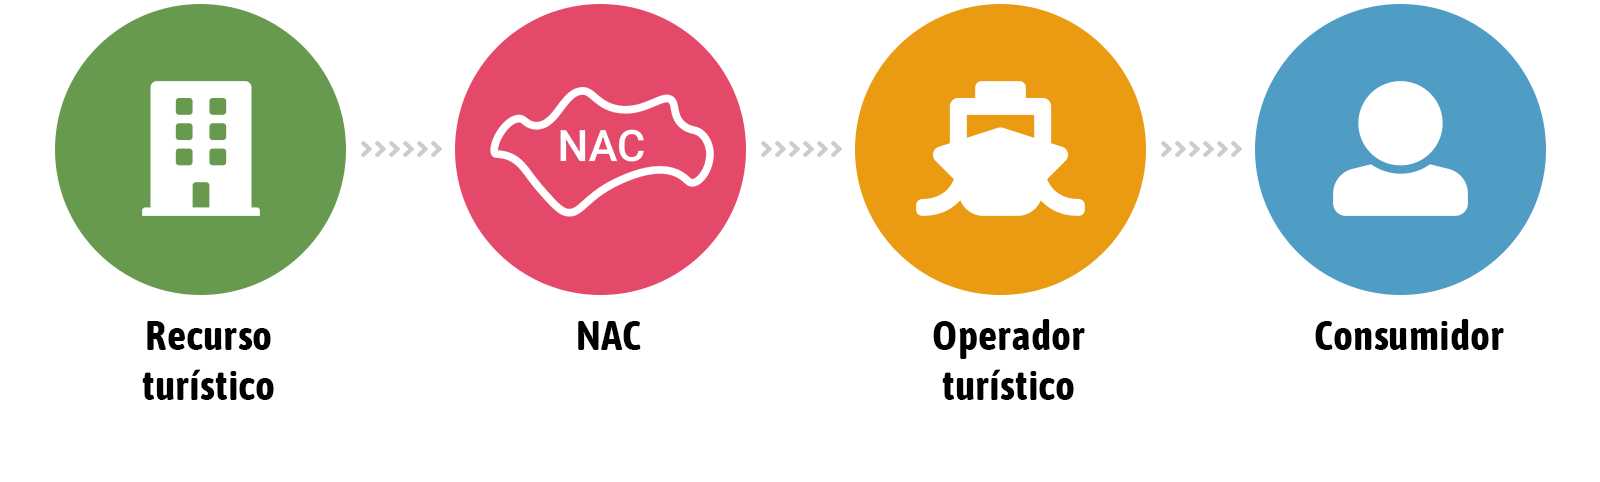 Infografía NAC